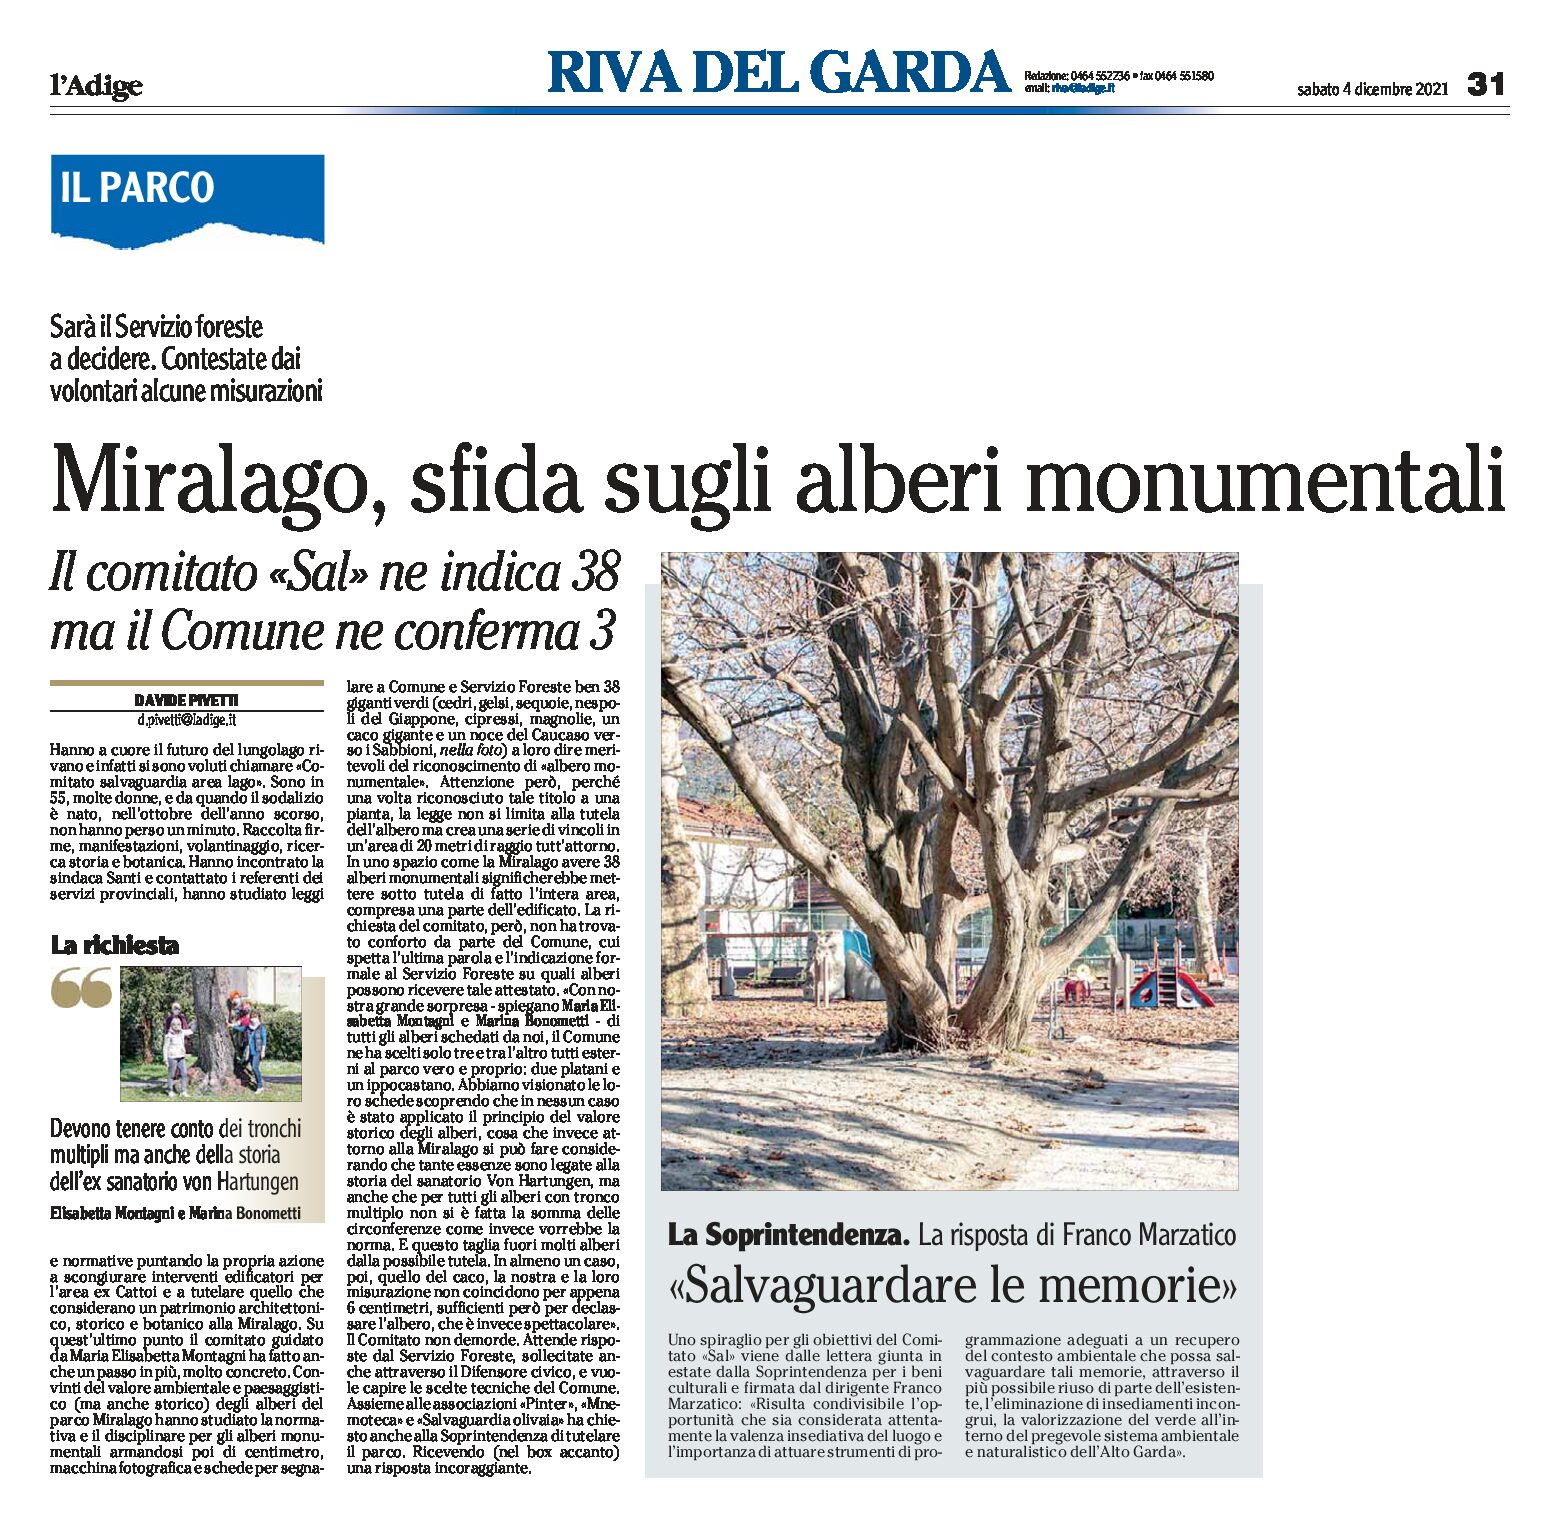 Riva, parco Miralago: sfida sugli alberi monumentali tra Comitato Sal e Comune